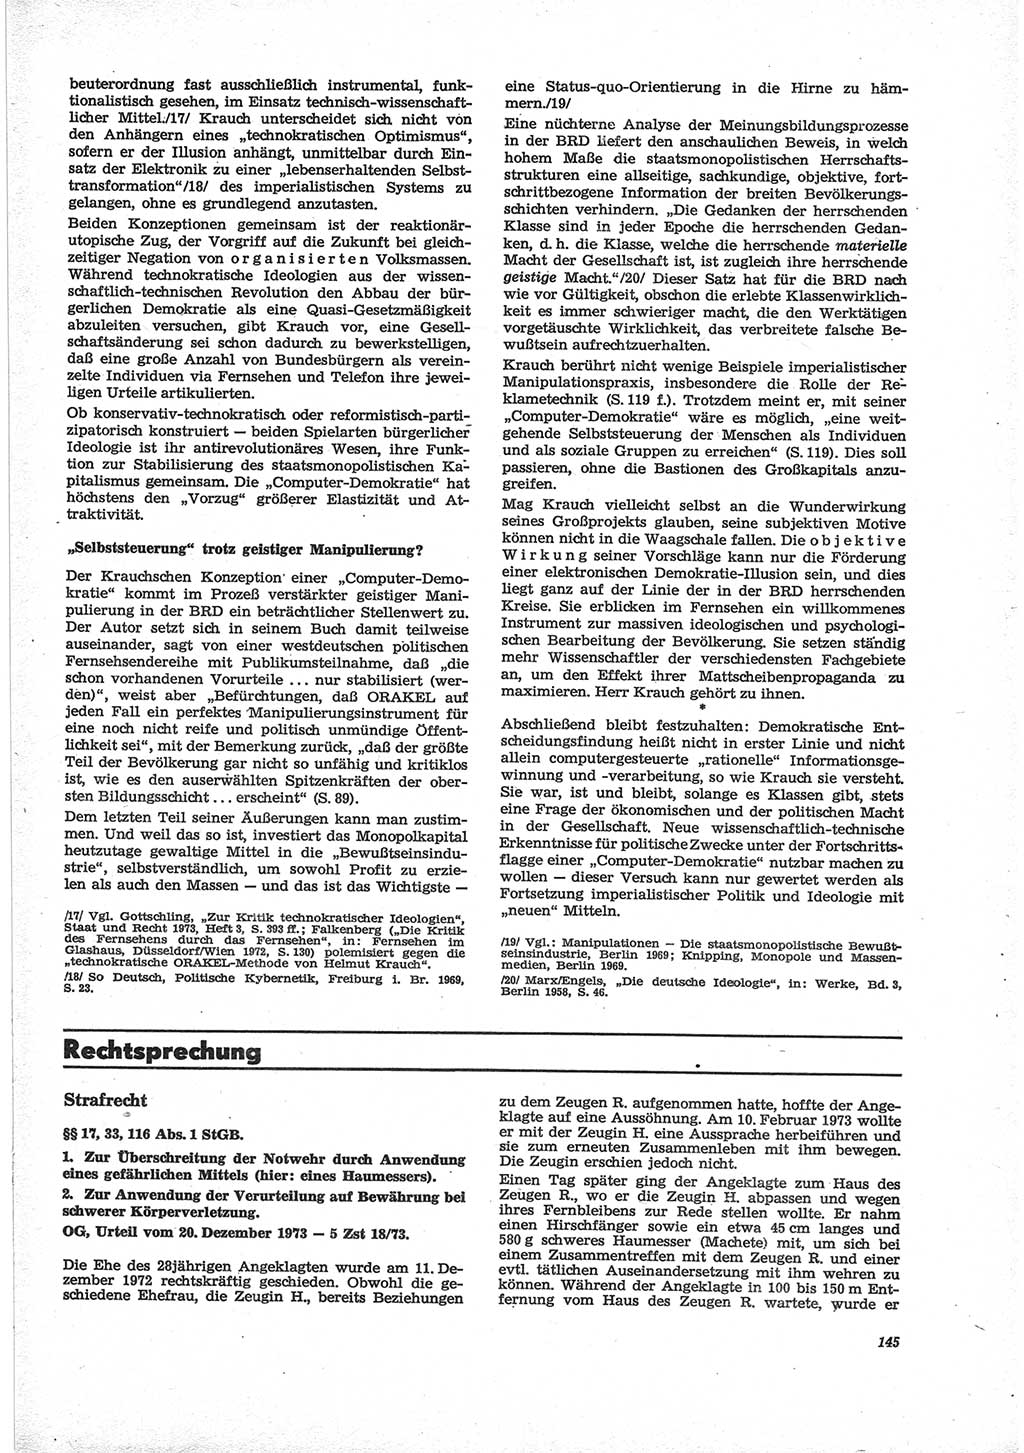 Neue Justiz (NJ), Zeitschrift für Recht und Rechtswissenschaft [Deutsche Demokratische Republik (DDR)], 28. Jahrgang 1974, Seite 145 (NJ DDR 1974, S. 145)